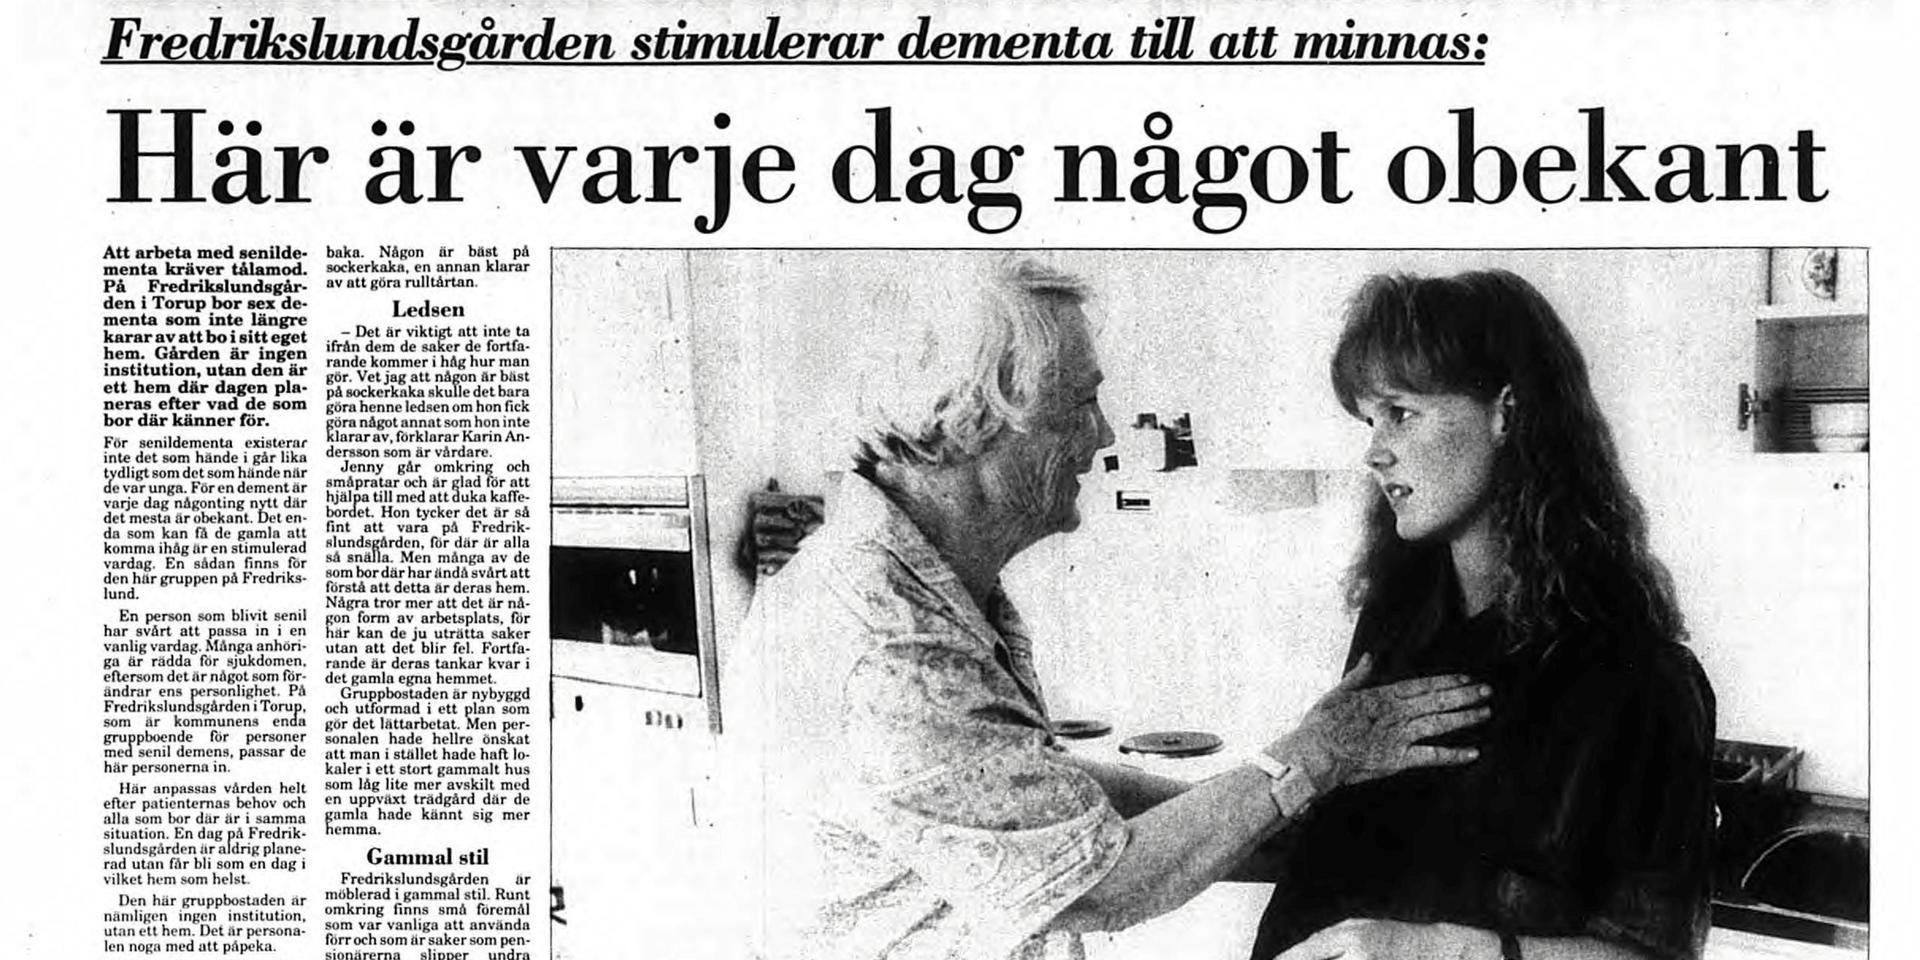 25 juli 1992. Jennie Nilsson arbetar som vårdbiträde på Fredrikslundsgården i Torup (nuvarande Sjölunda äldreboende). Genom fackligt engagemang i Kommunal och striden för ett rättvist schema för de anställda tar hennes politiska engagemang fart.